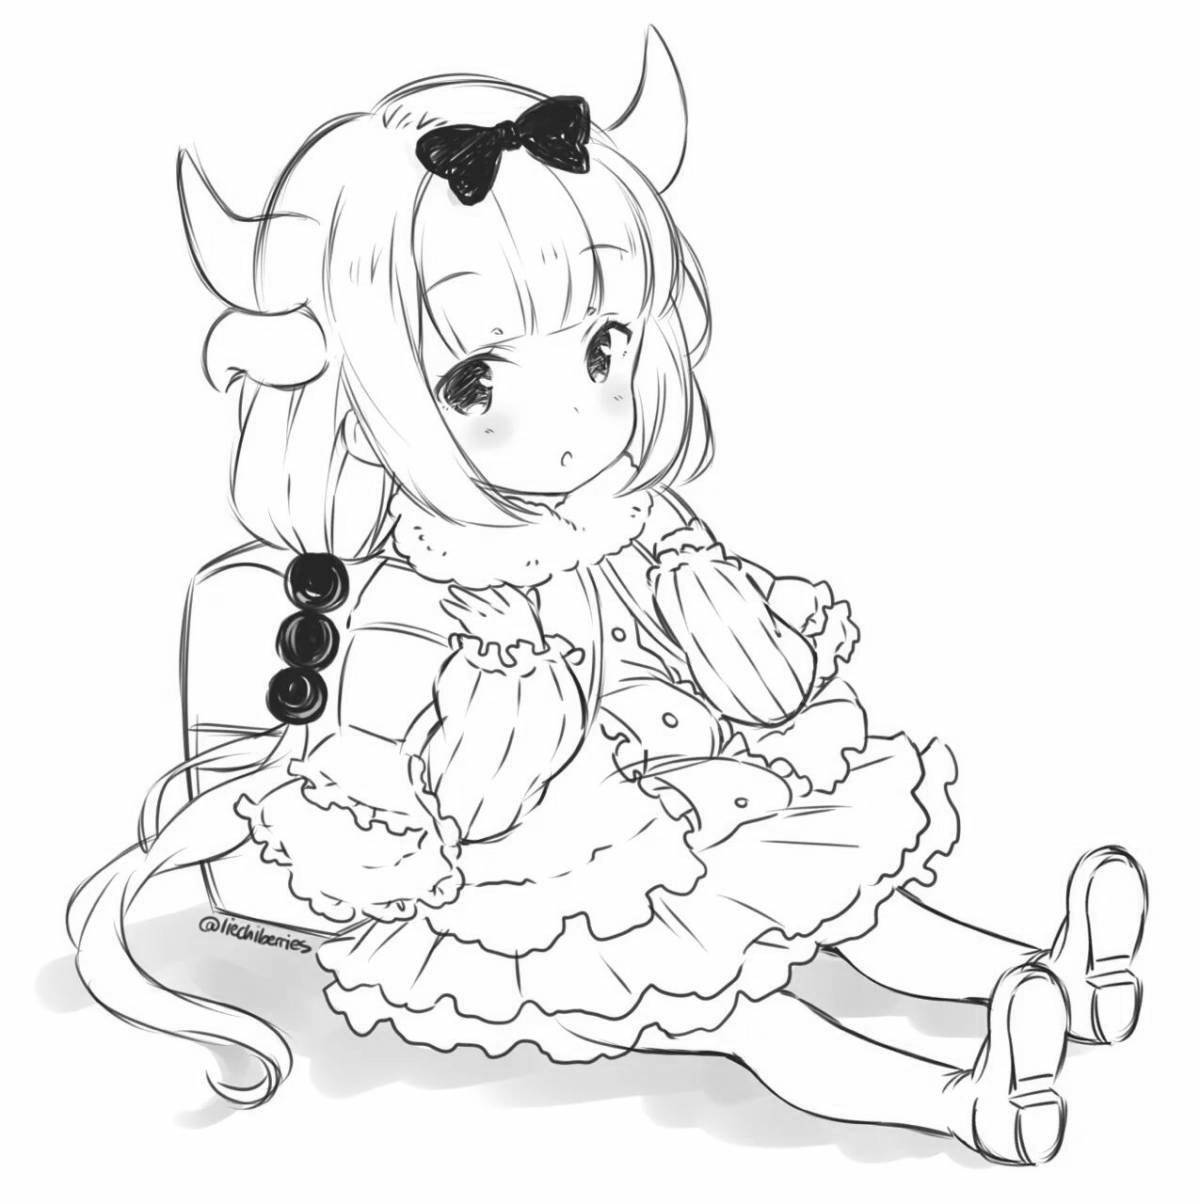 Kobayashi's graceful anime maid dragon